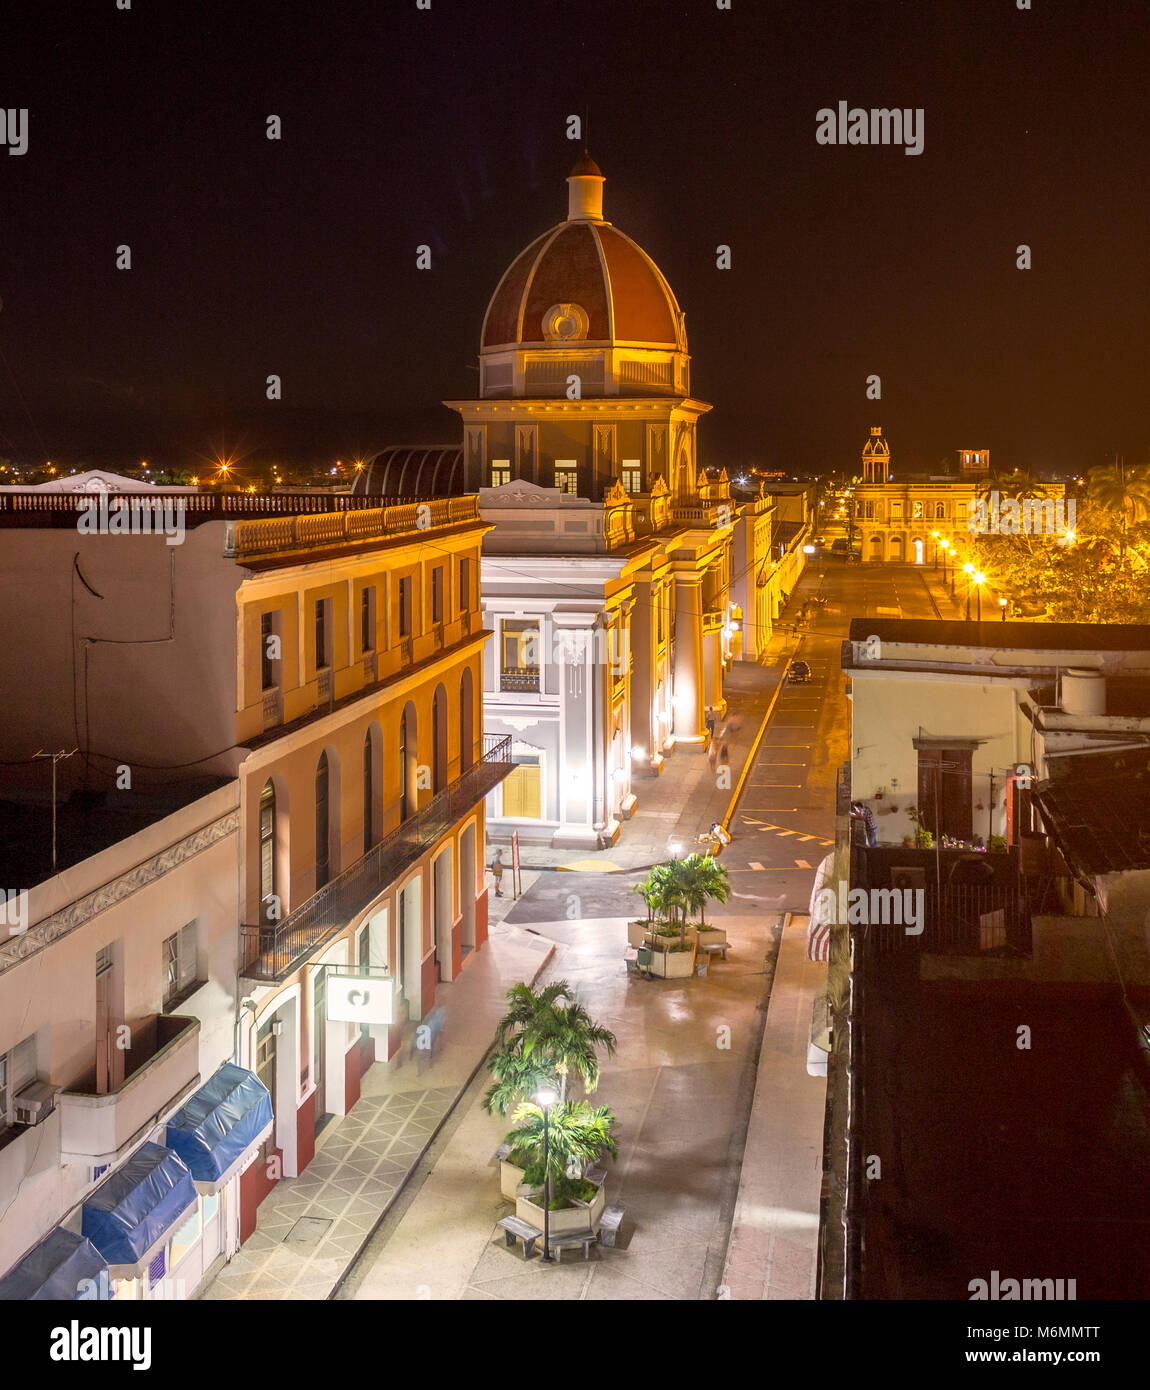 View of Palacio del Gobierno, and Marti Park in Cienfuegos, Cuba at night Stock Photo